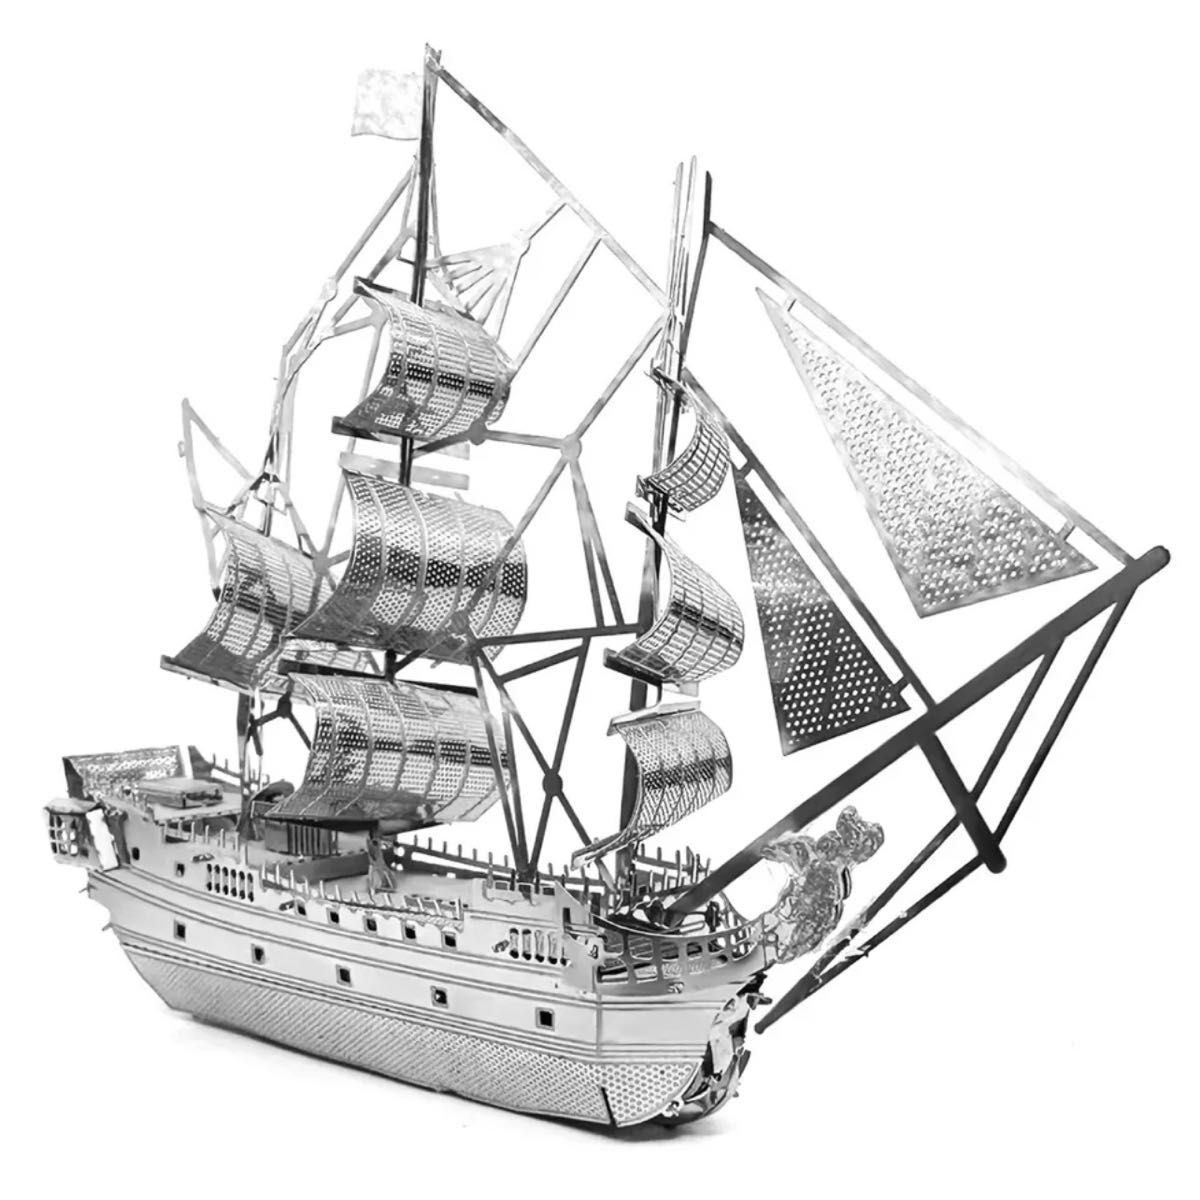 3D メタリックパズル 海賊船